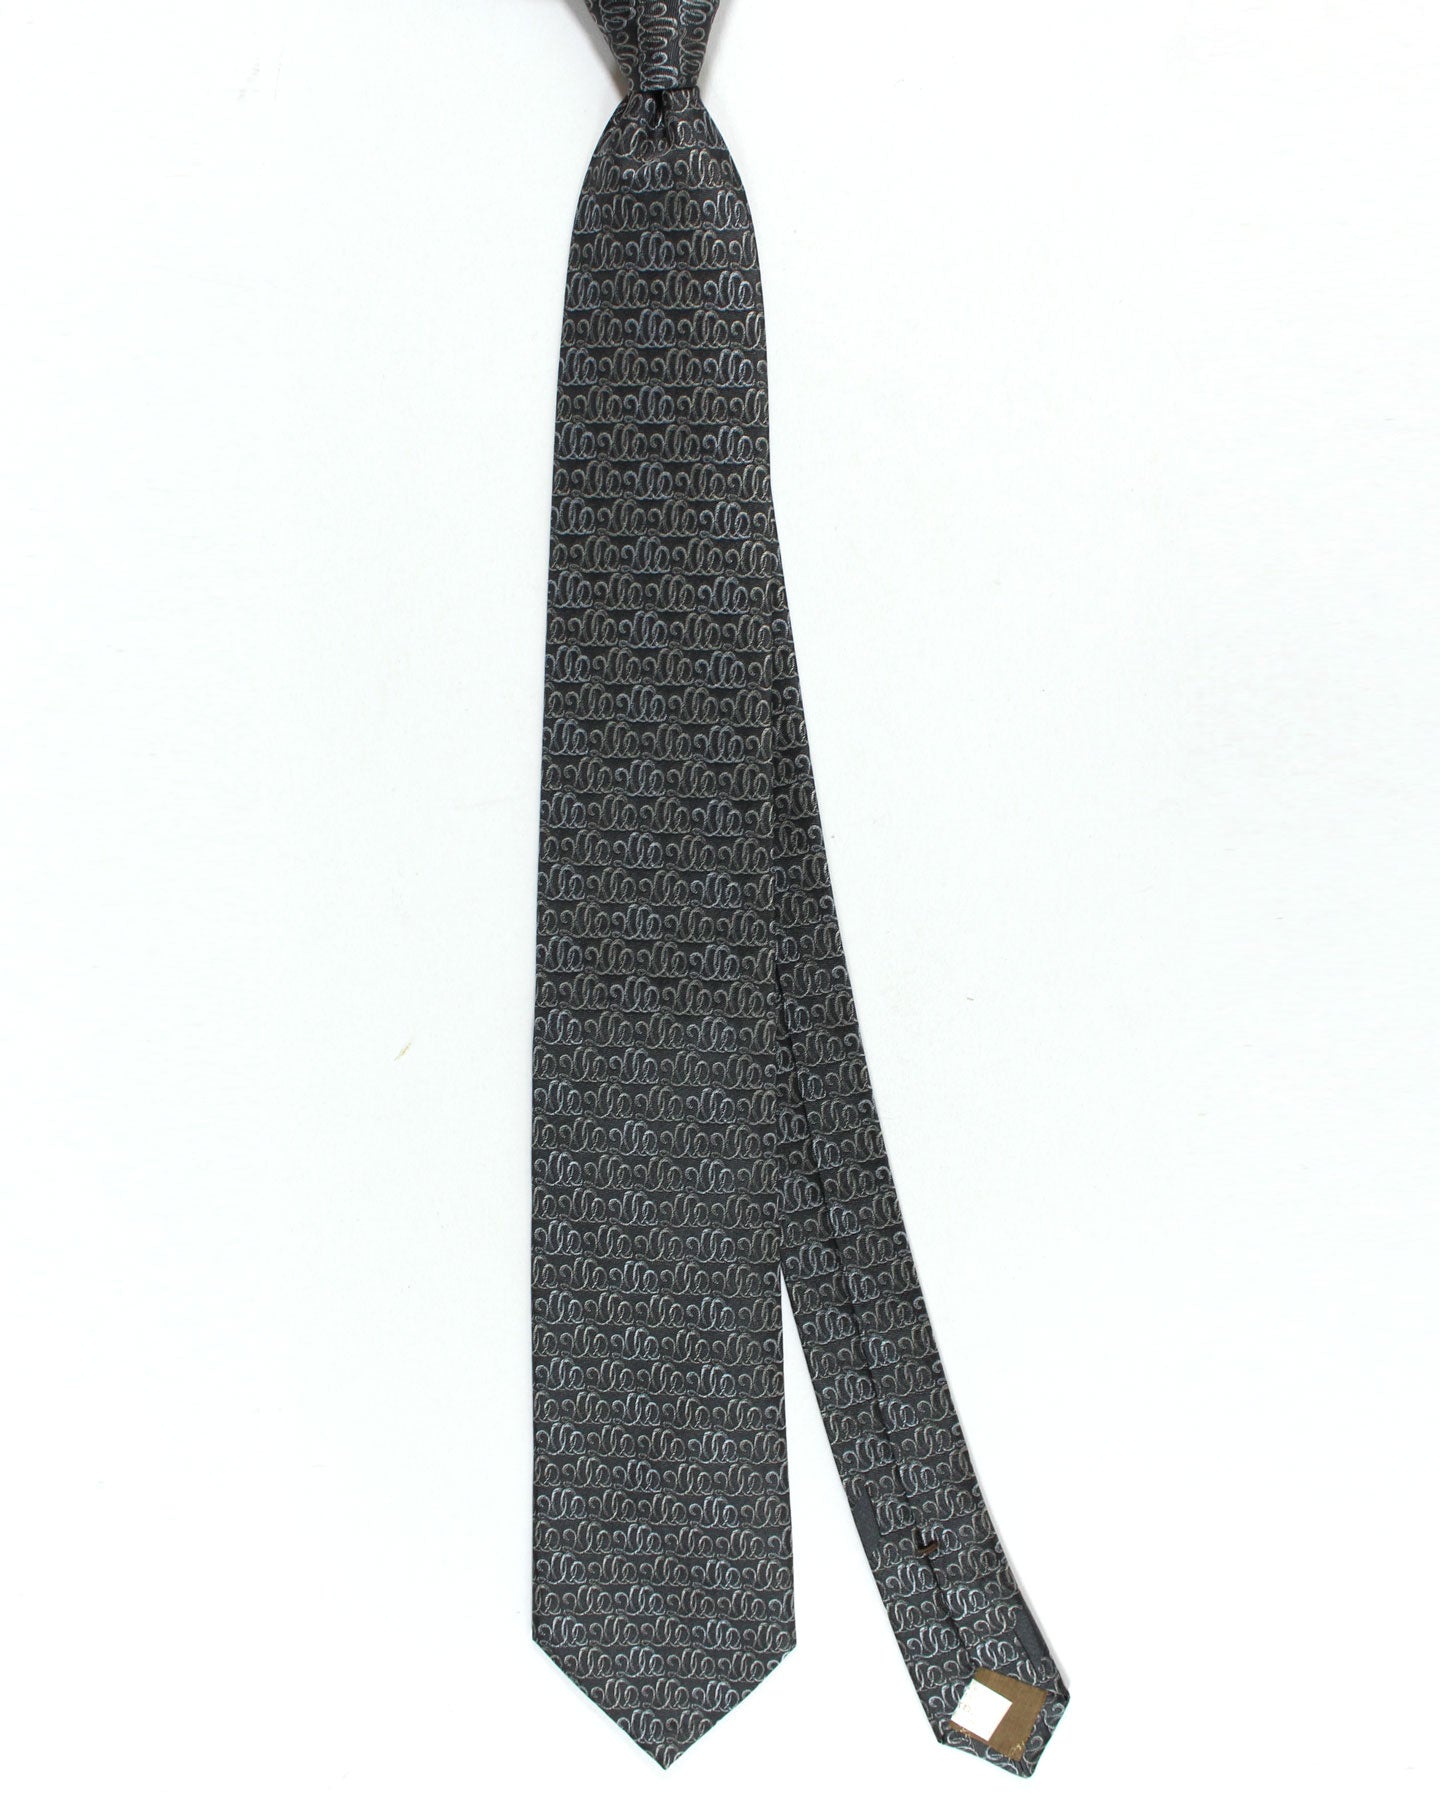 Salvatore Ferragamo Tie Black Swirl Design